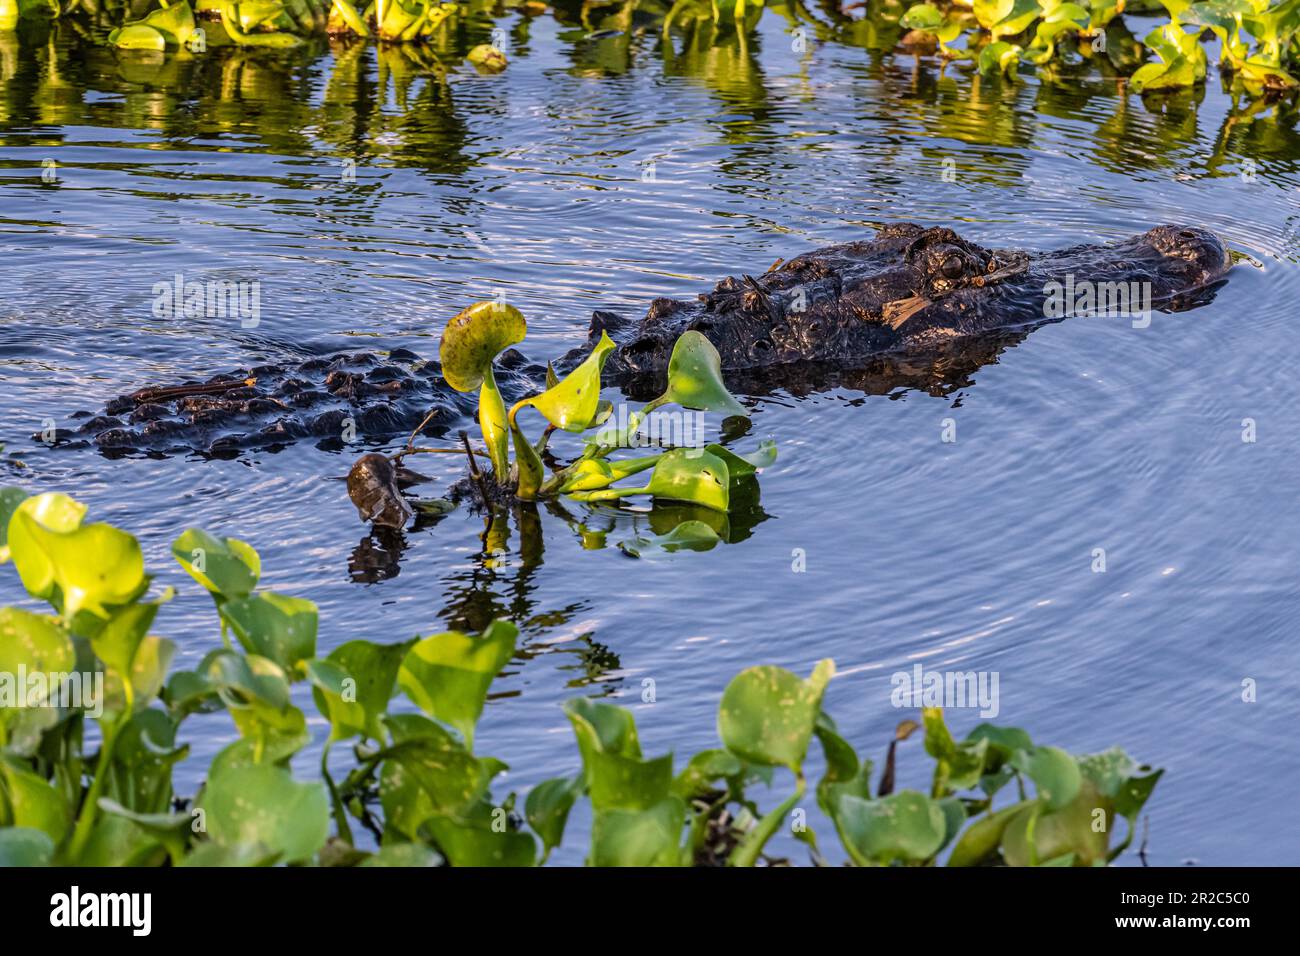 Alligator américain (Alligator mississippiensis) nageant au milieu d'une jacinthe d'eau au parc national Paynes Prairie Preserve à Micanopy, en Floride. (ÉTATS-UNIS) Banque D'Images